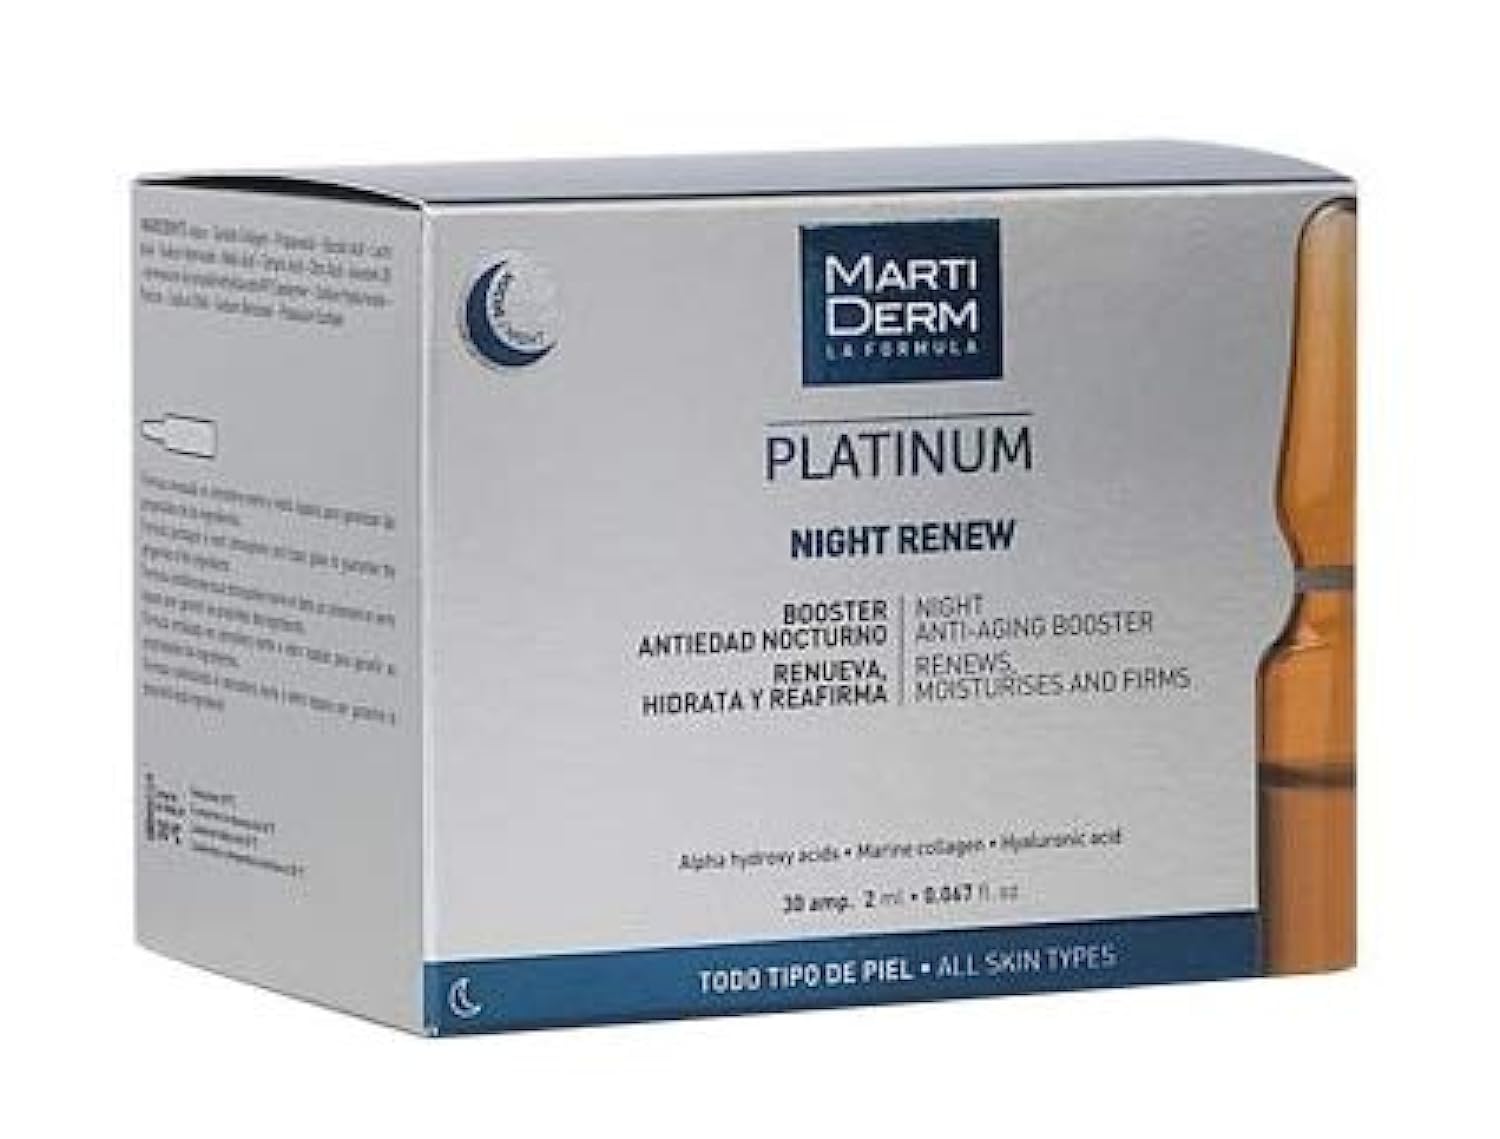 Esupli.com Martiderm Night Renew Platinum | 30amp | Night Anti Aging Bo